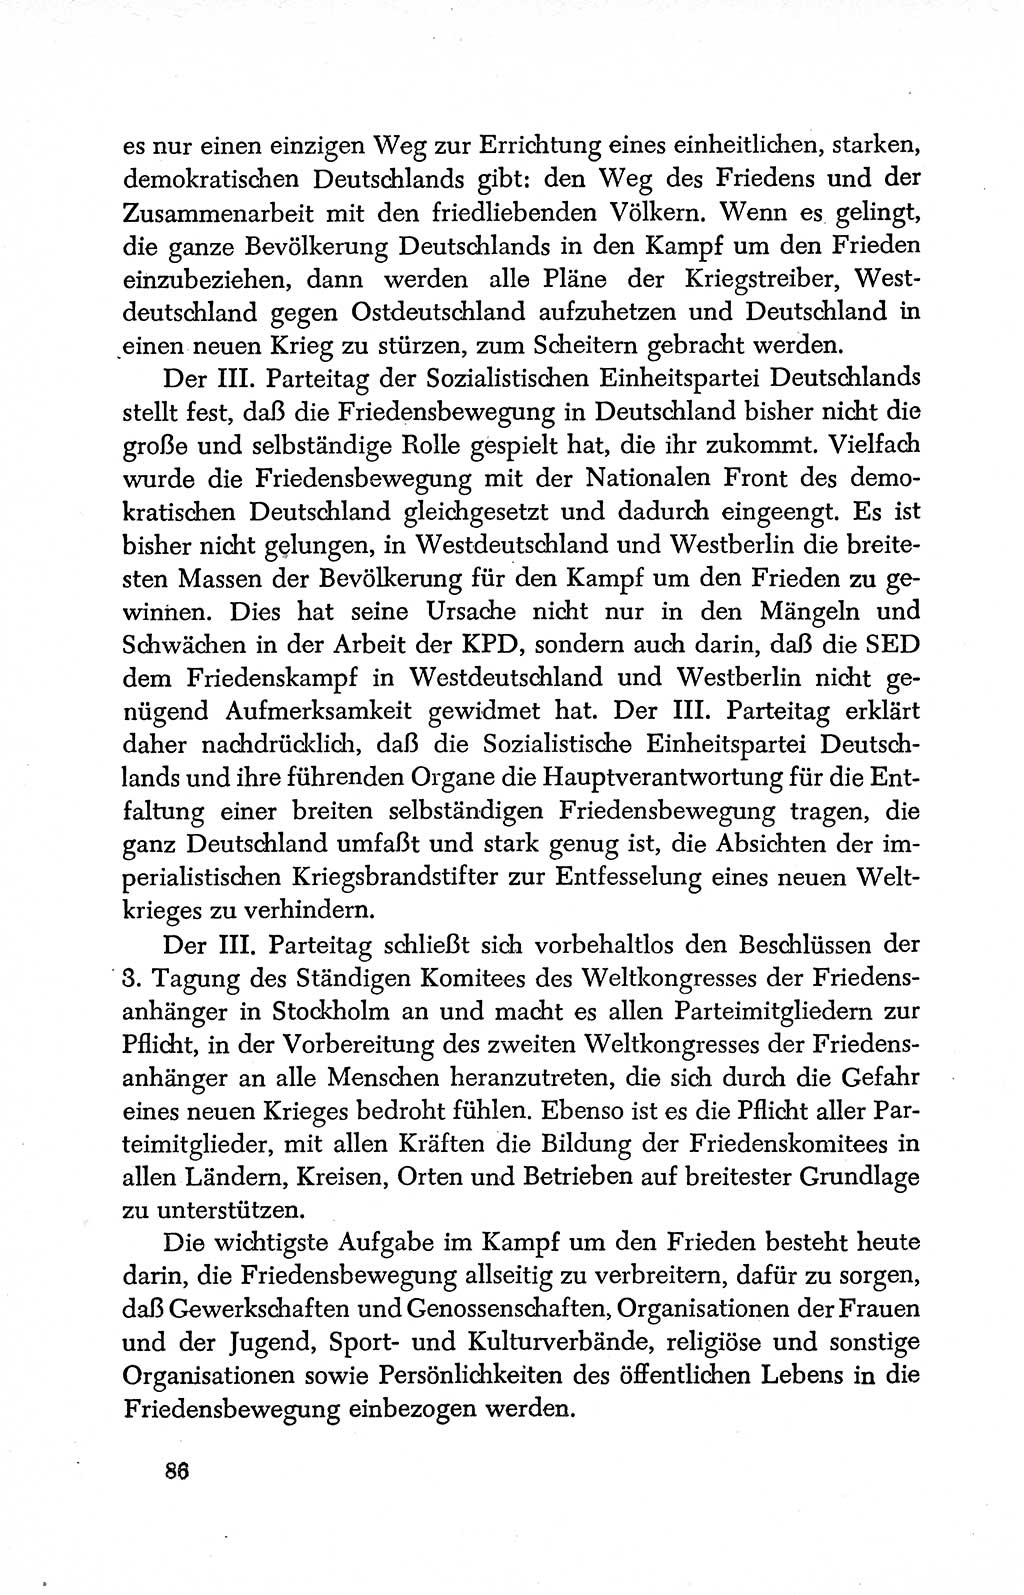 Dokumente der Sozialistischen Einheitspartei Deutschlands (SED) [Deutsche Demokratische Republik (DDR)] 1950-1952, Seite 86 (Dok. SED DDR 1950-1952, S. 86)